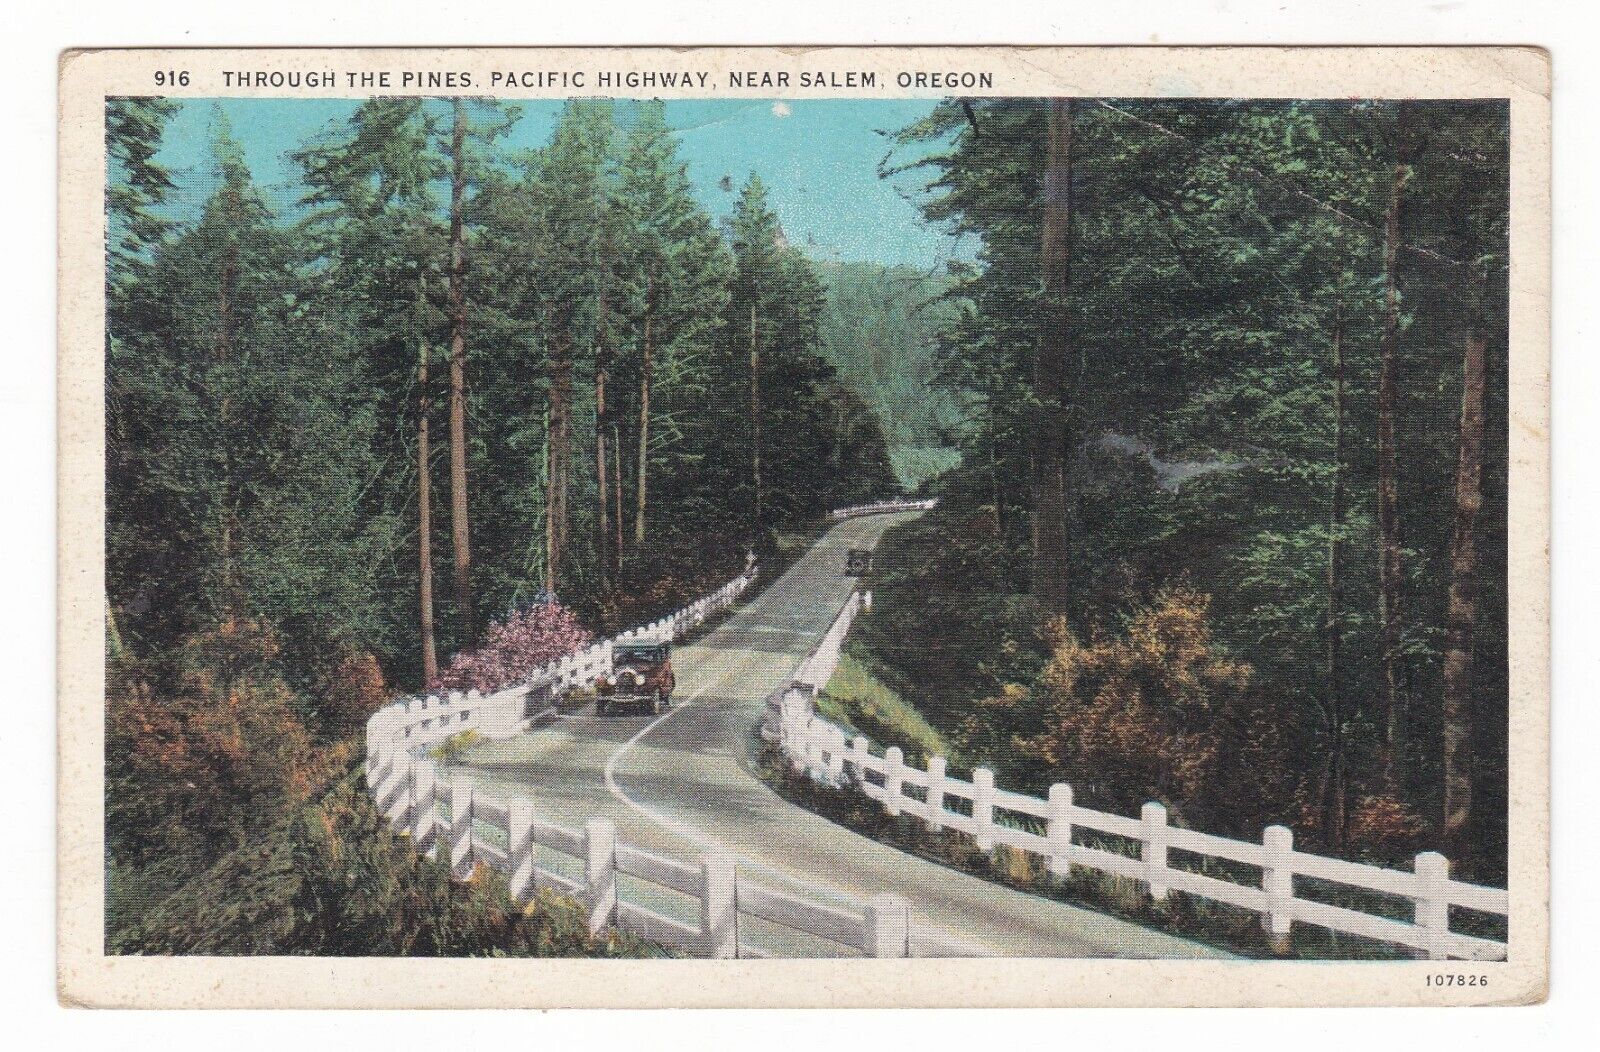 1932 SALEM OREGON PINES PACIFIC HIGHWAY TOURING CAR VINTAGE POSTCARD OR PORTLAND